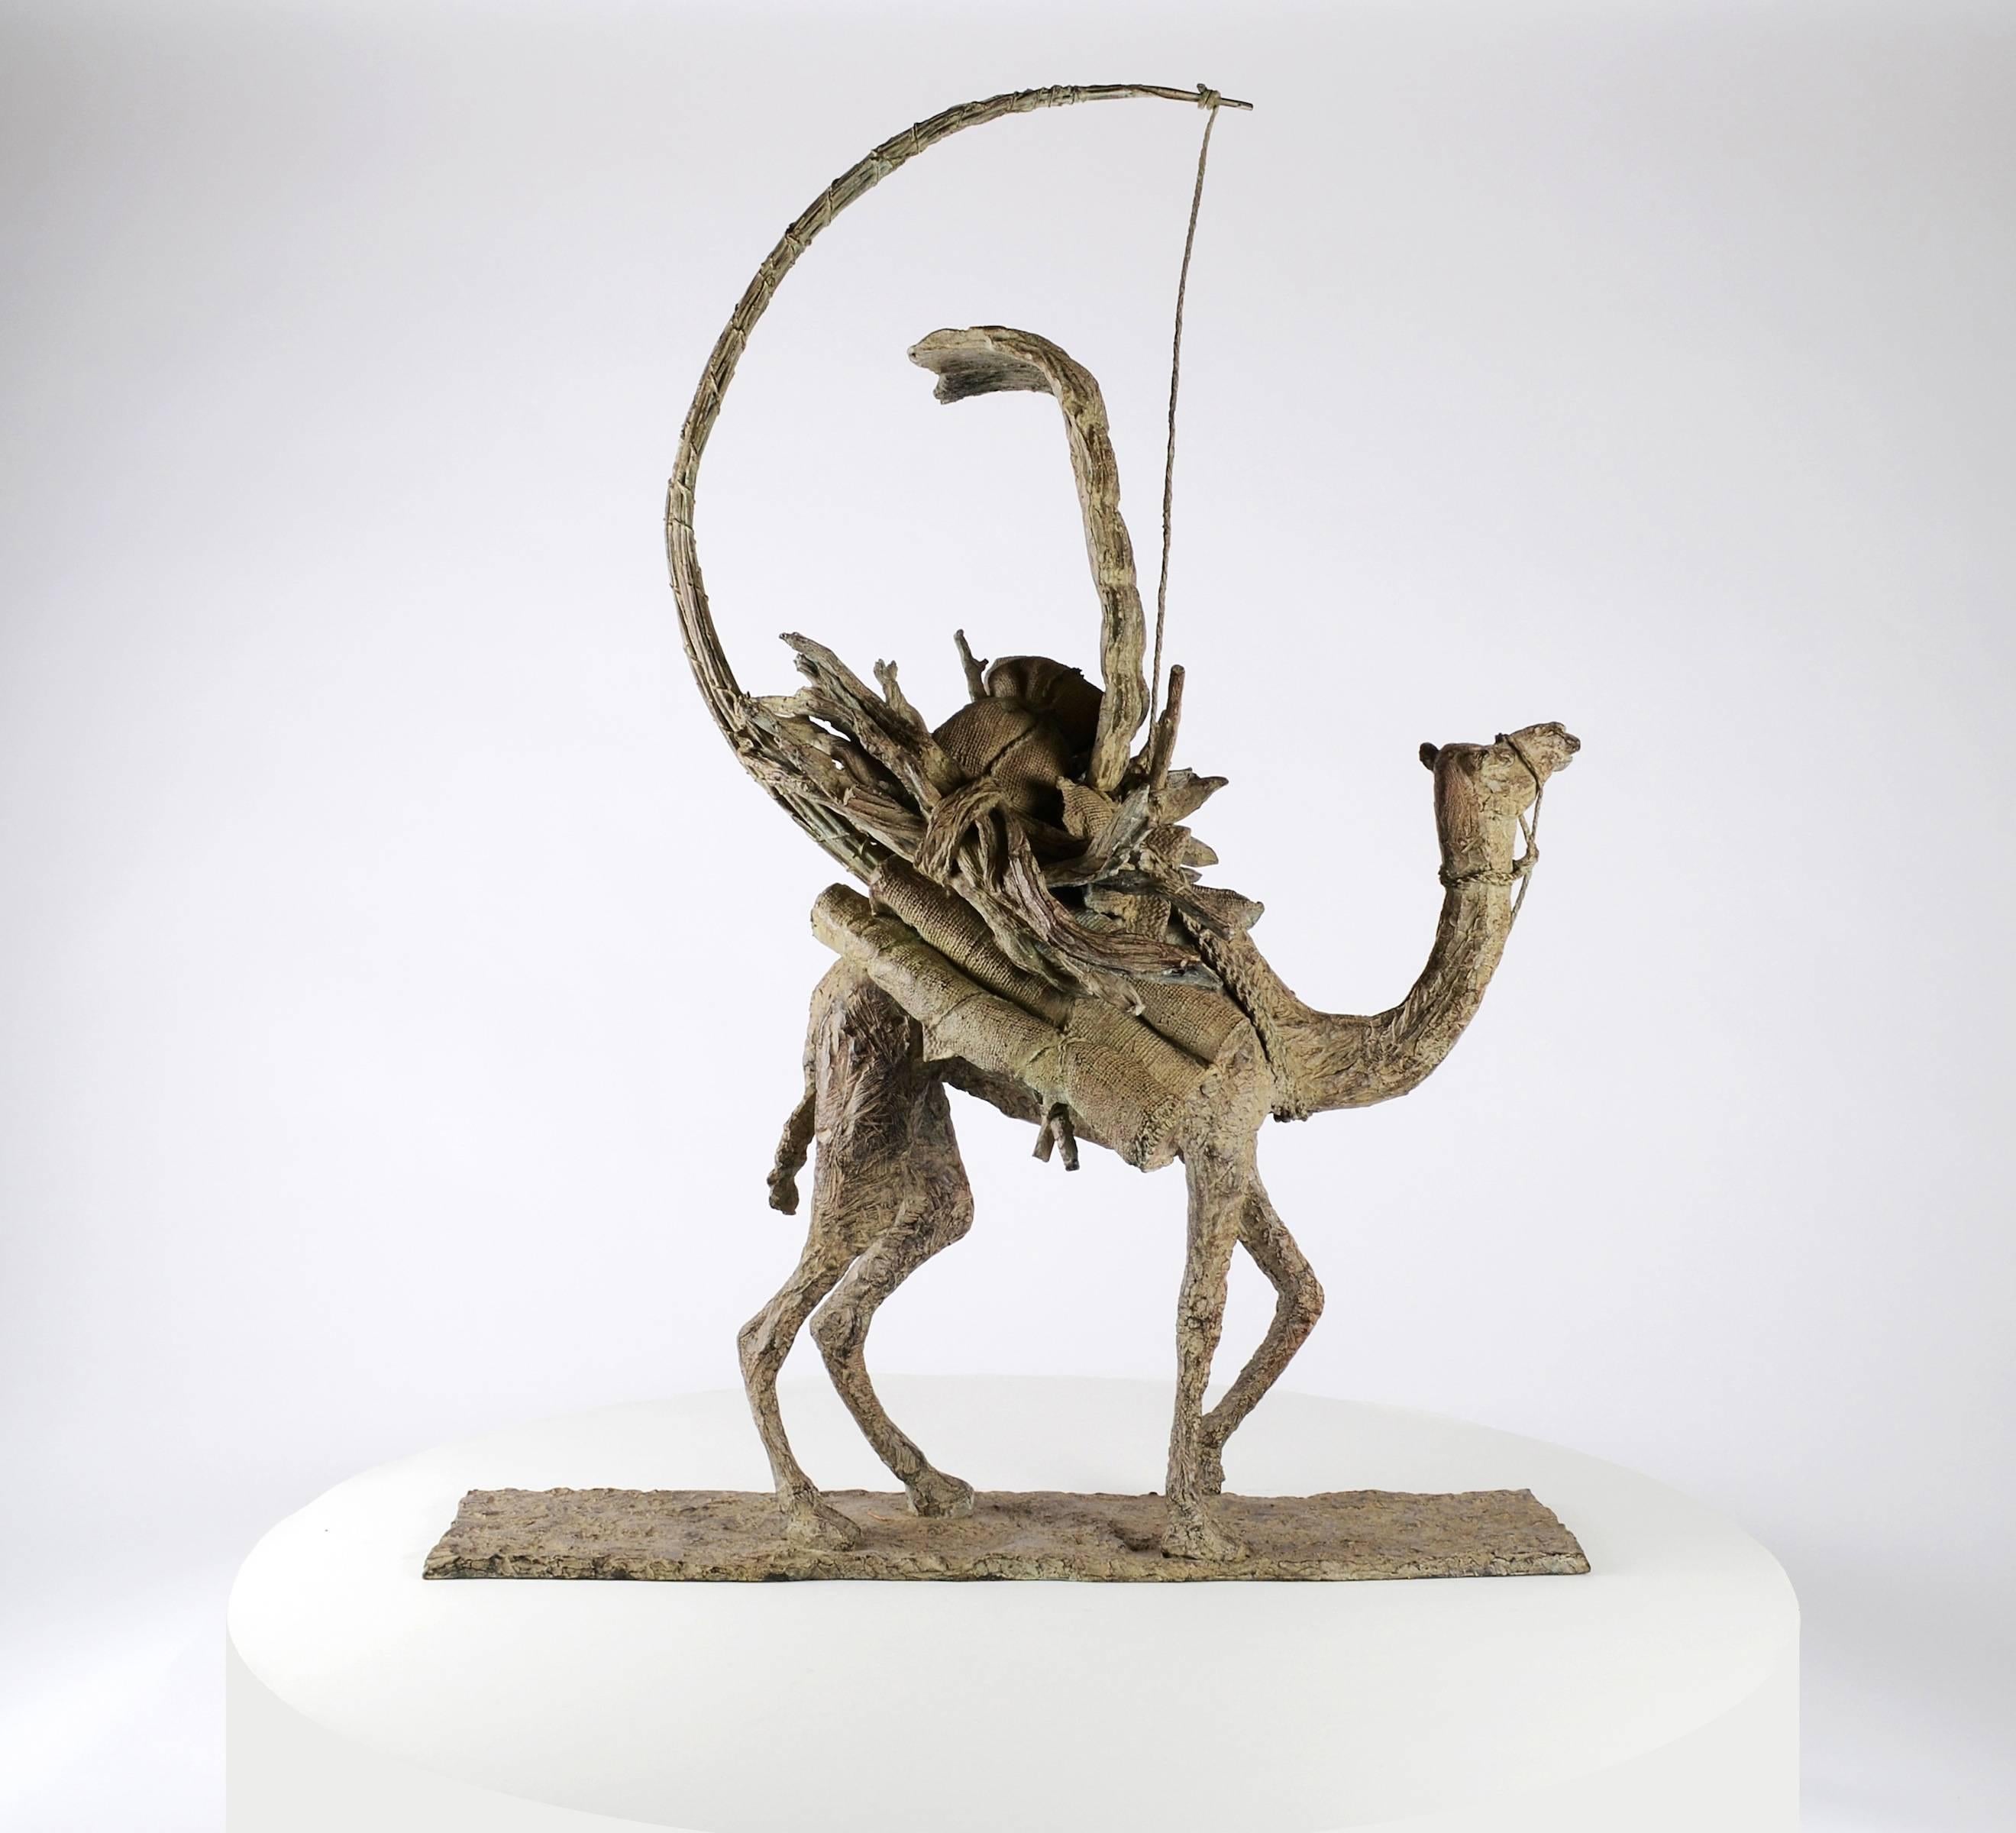 Figurative Sculpture Marine de Soos - Le récipient du désert de M. de Soos  Sculpture d'animal en bronze d'un chameau